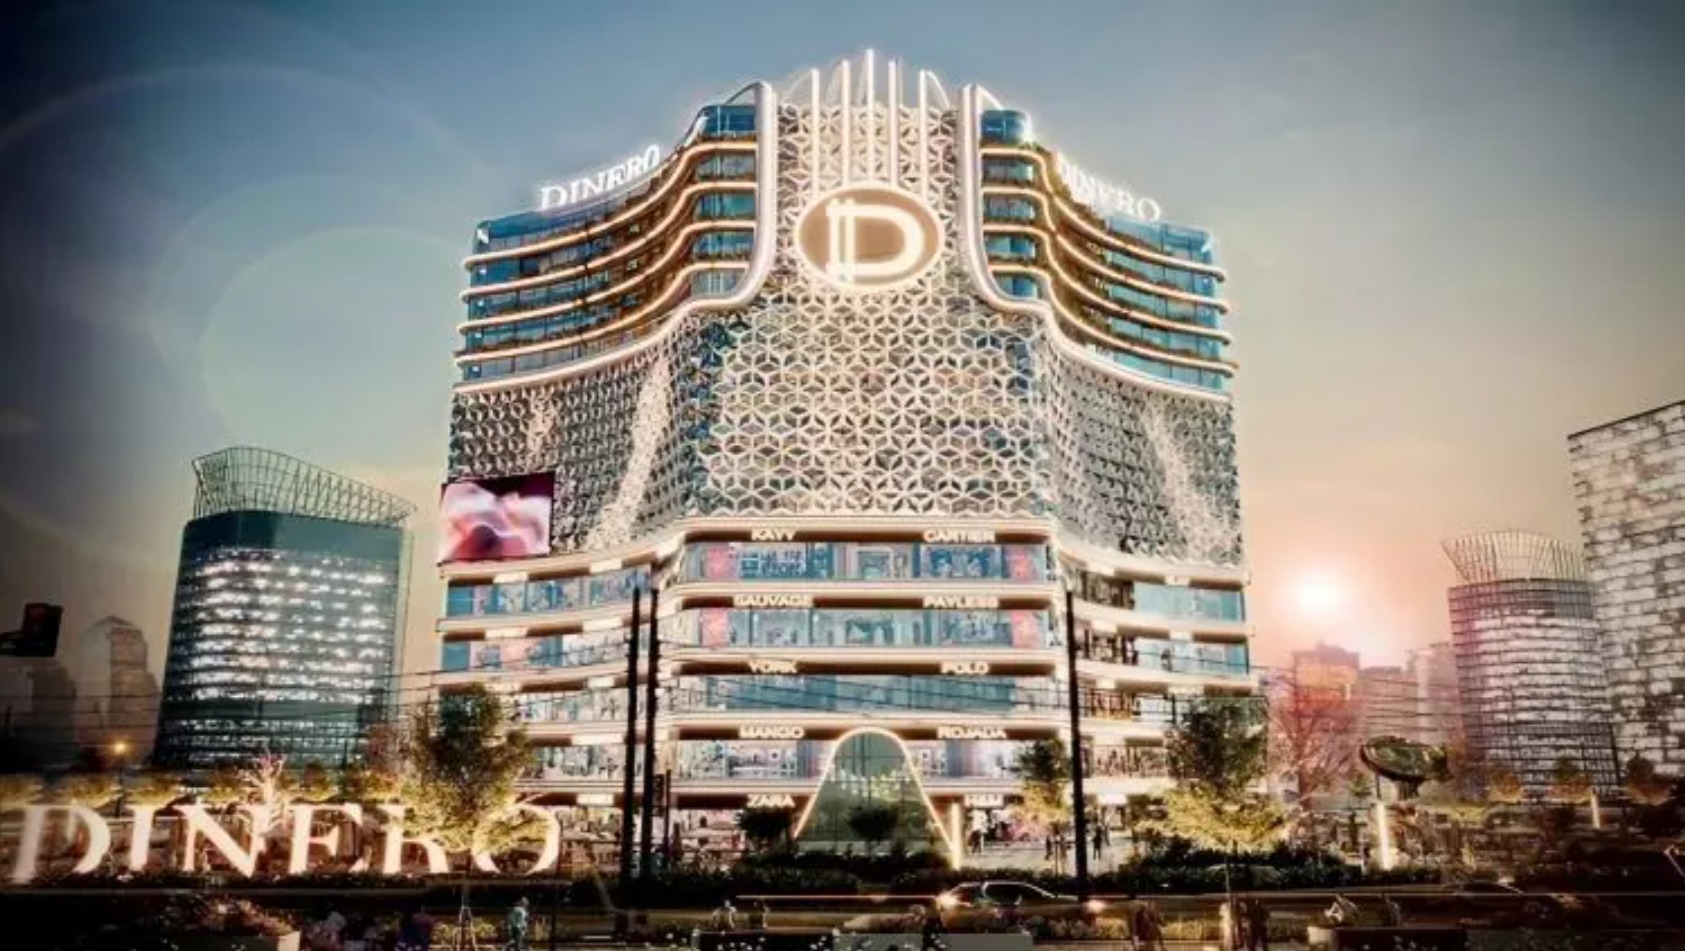 دينيرو تاور العاصمة الإدارية الجديدة جولدن تاون – Dinero Tower New Capital